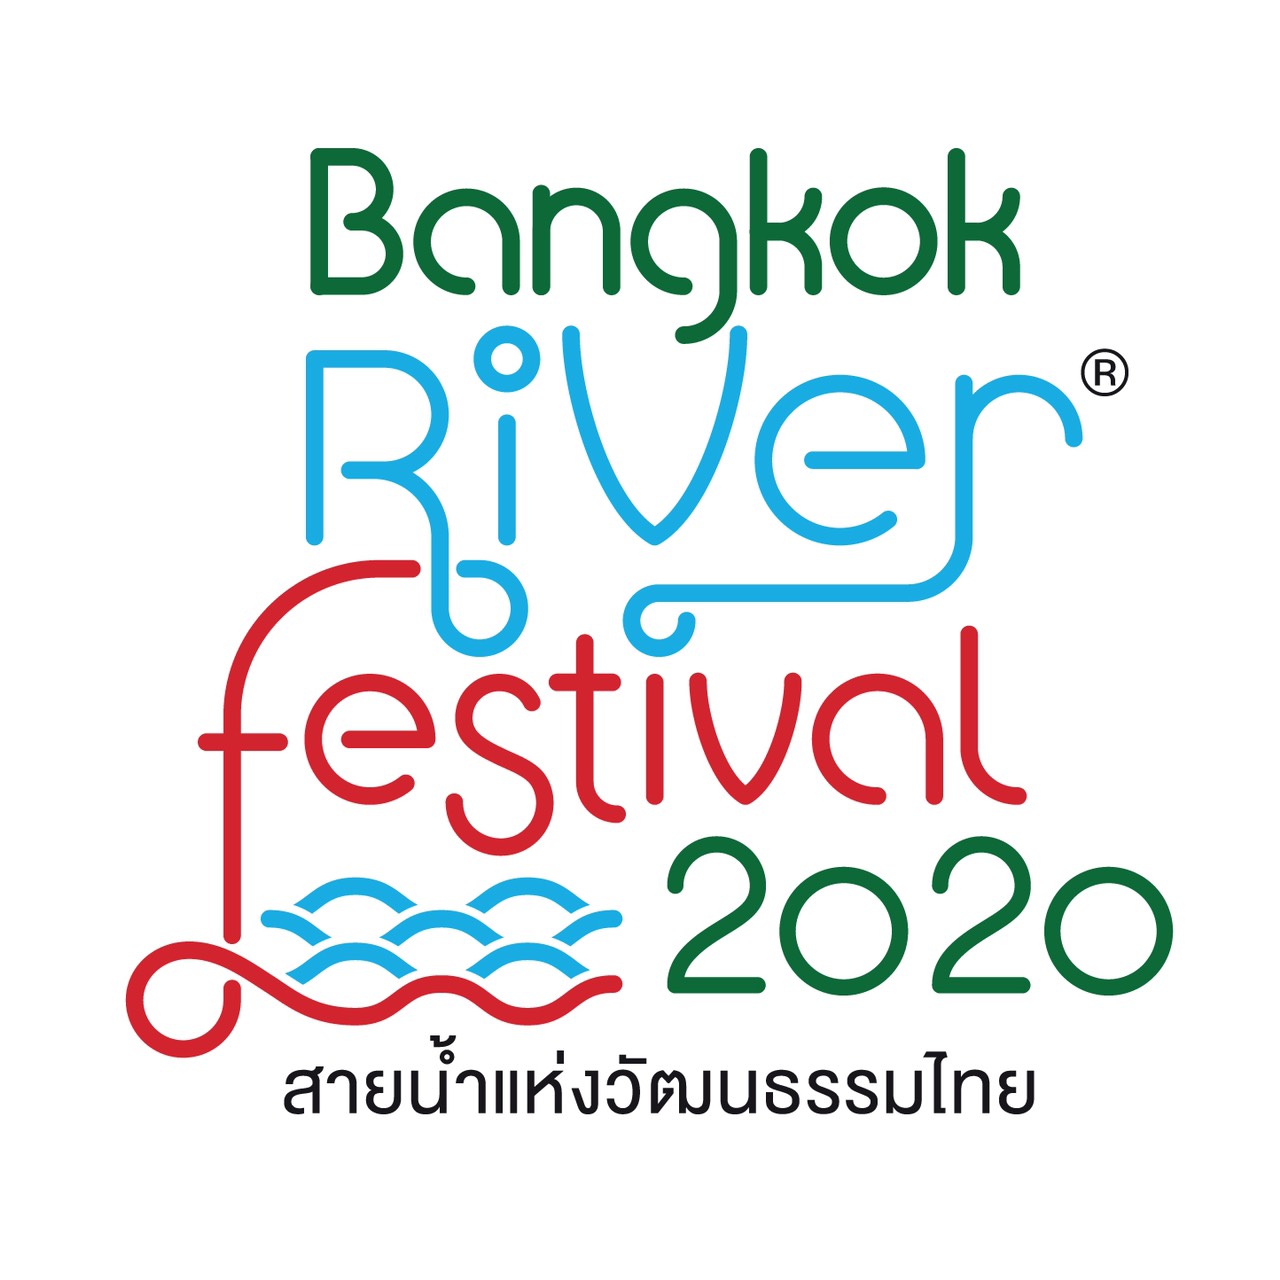 สุดอลังส่งท้ายปี Bangkok River Festival 2020 ครั้งที่ 6 ร่วมลอยกระทงและท่องเที่ยววิถีไทย สัมผัสมนต์เสน่ห์วัฒนธรรมไทยริมสายน้ำเจ้าพระยา